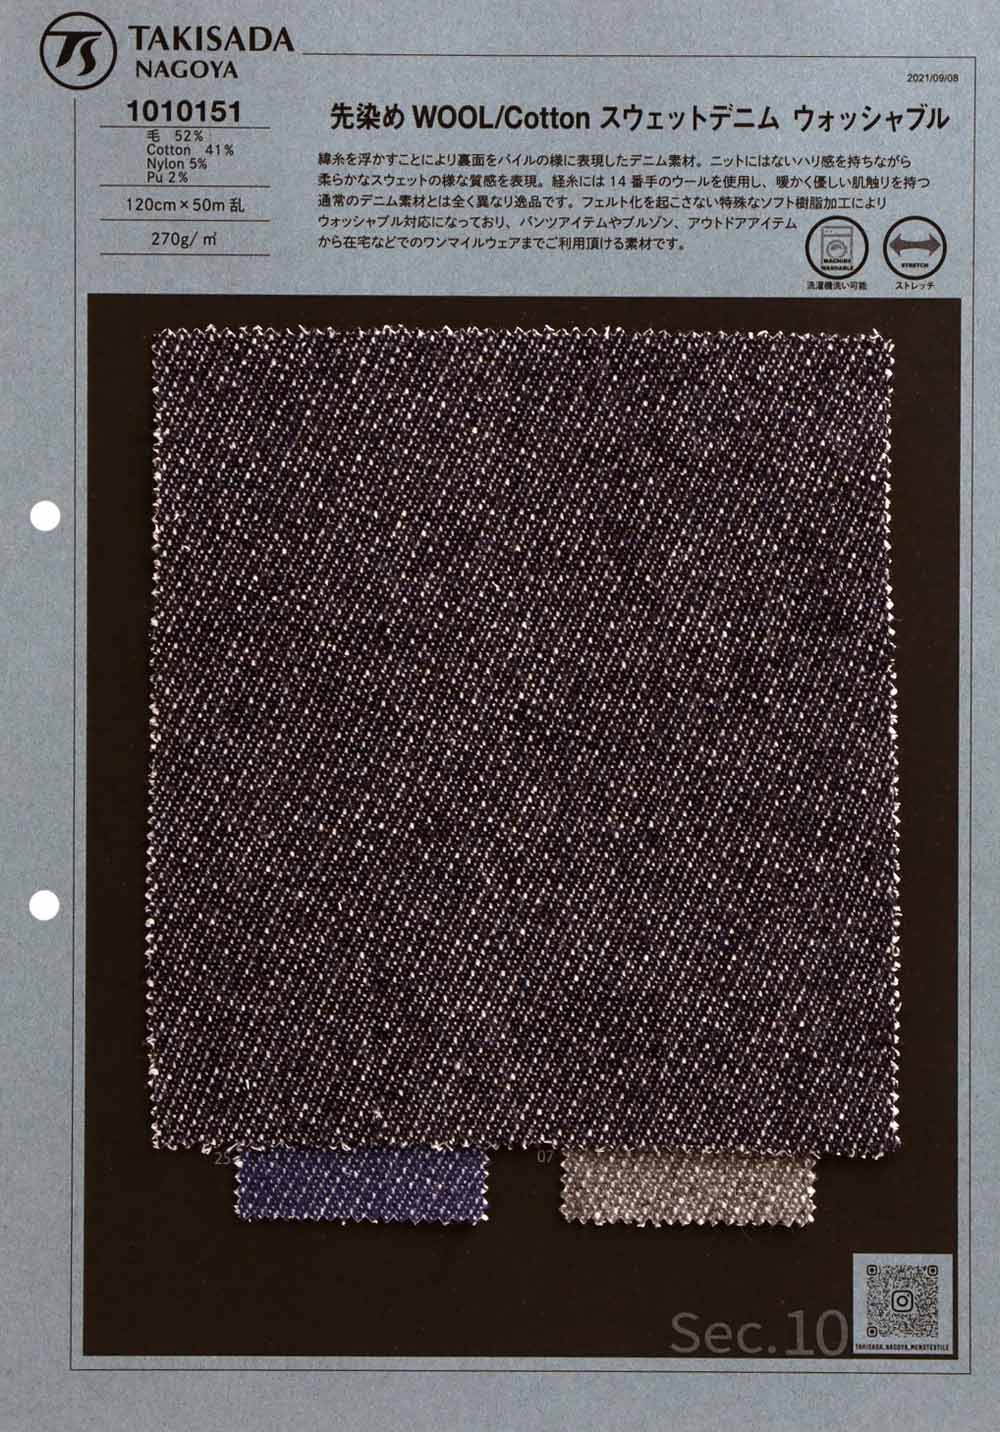 1010151 Laine Et Coton Lavable En Jean Sweat Teint En Fil[Fabrication De Textile] Takisada Nagoya